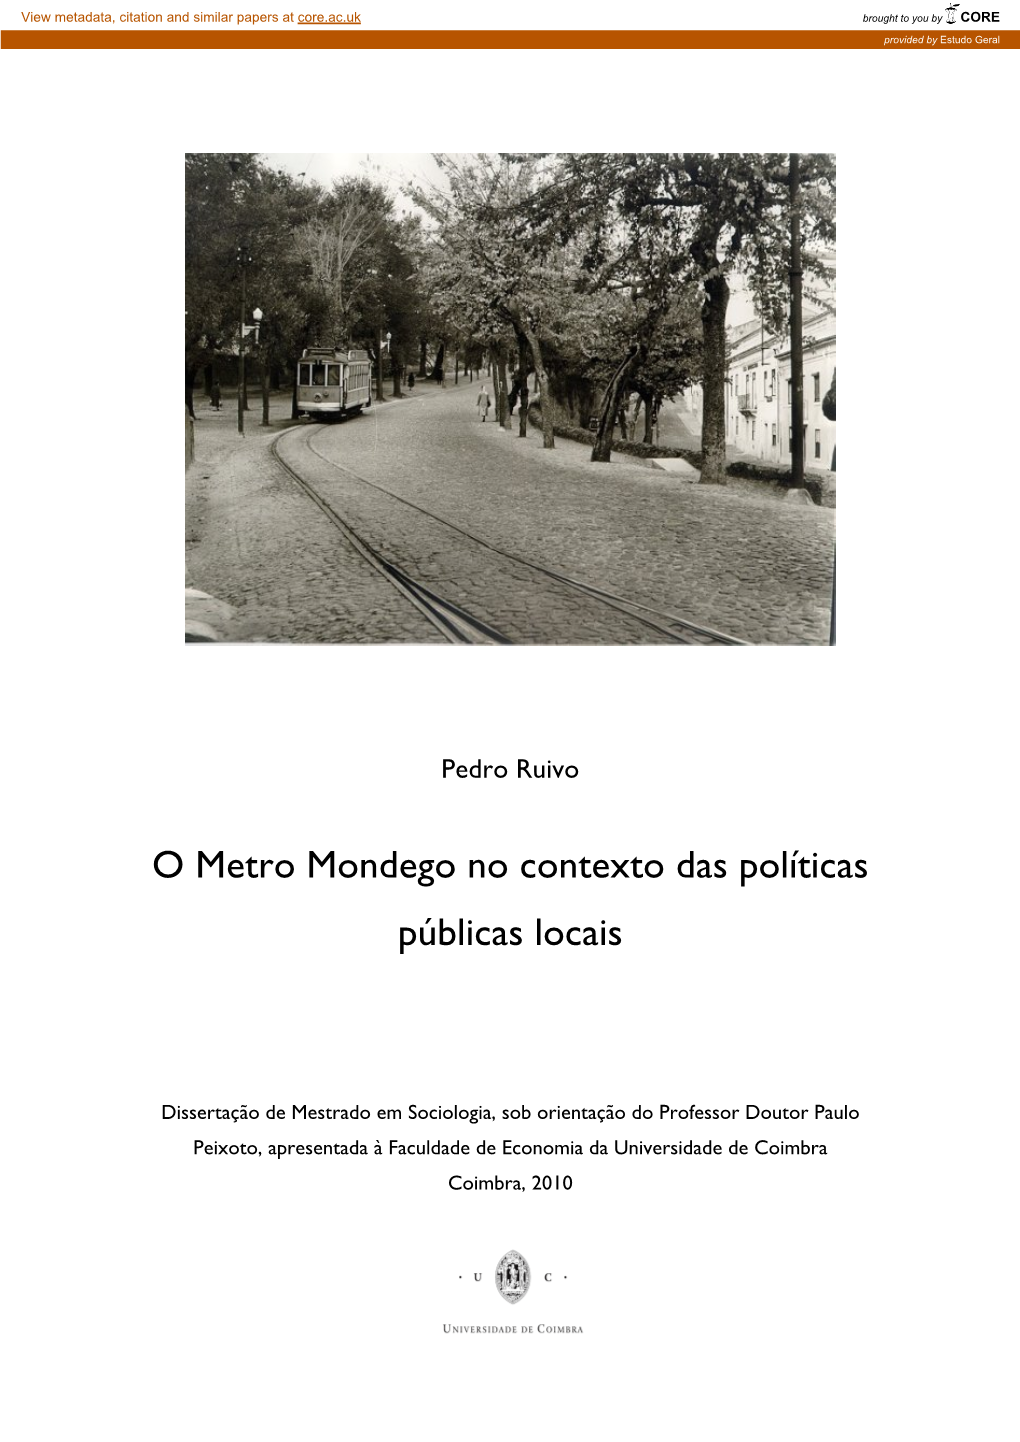 O Metro Mondego No Contexto Das Políticas Públicas Locais